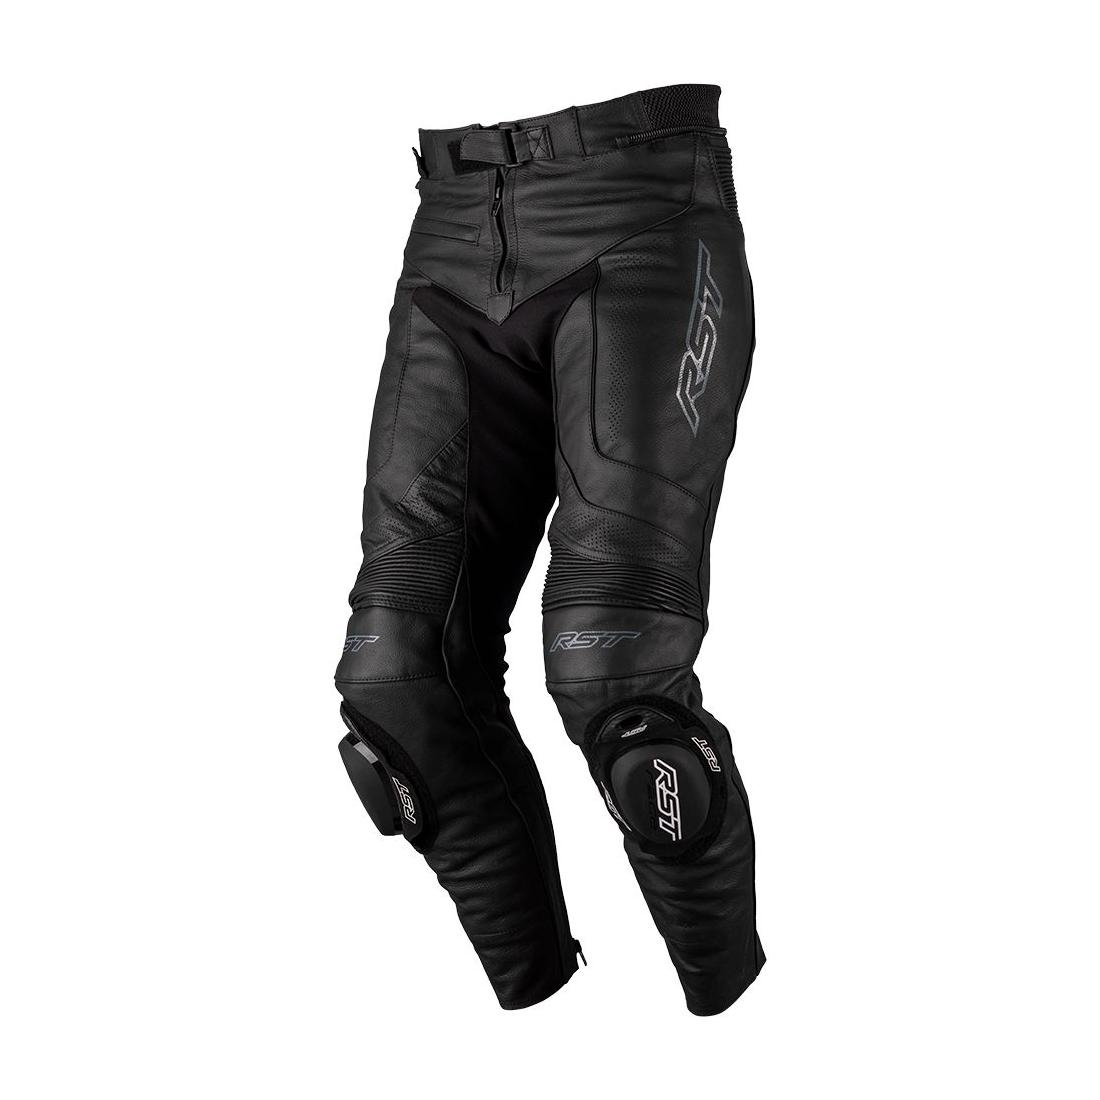 Pantalon moto femme cuir RST S1 noir - Équipement route sur La Bécanerie